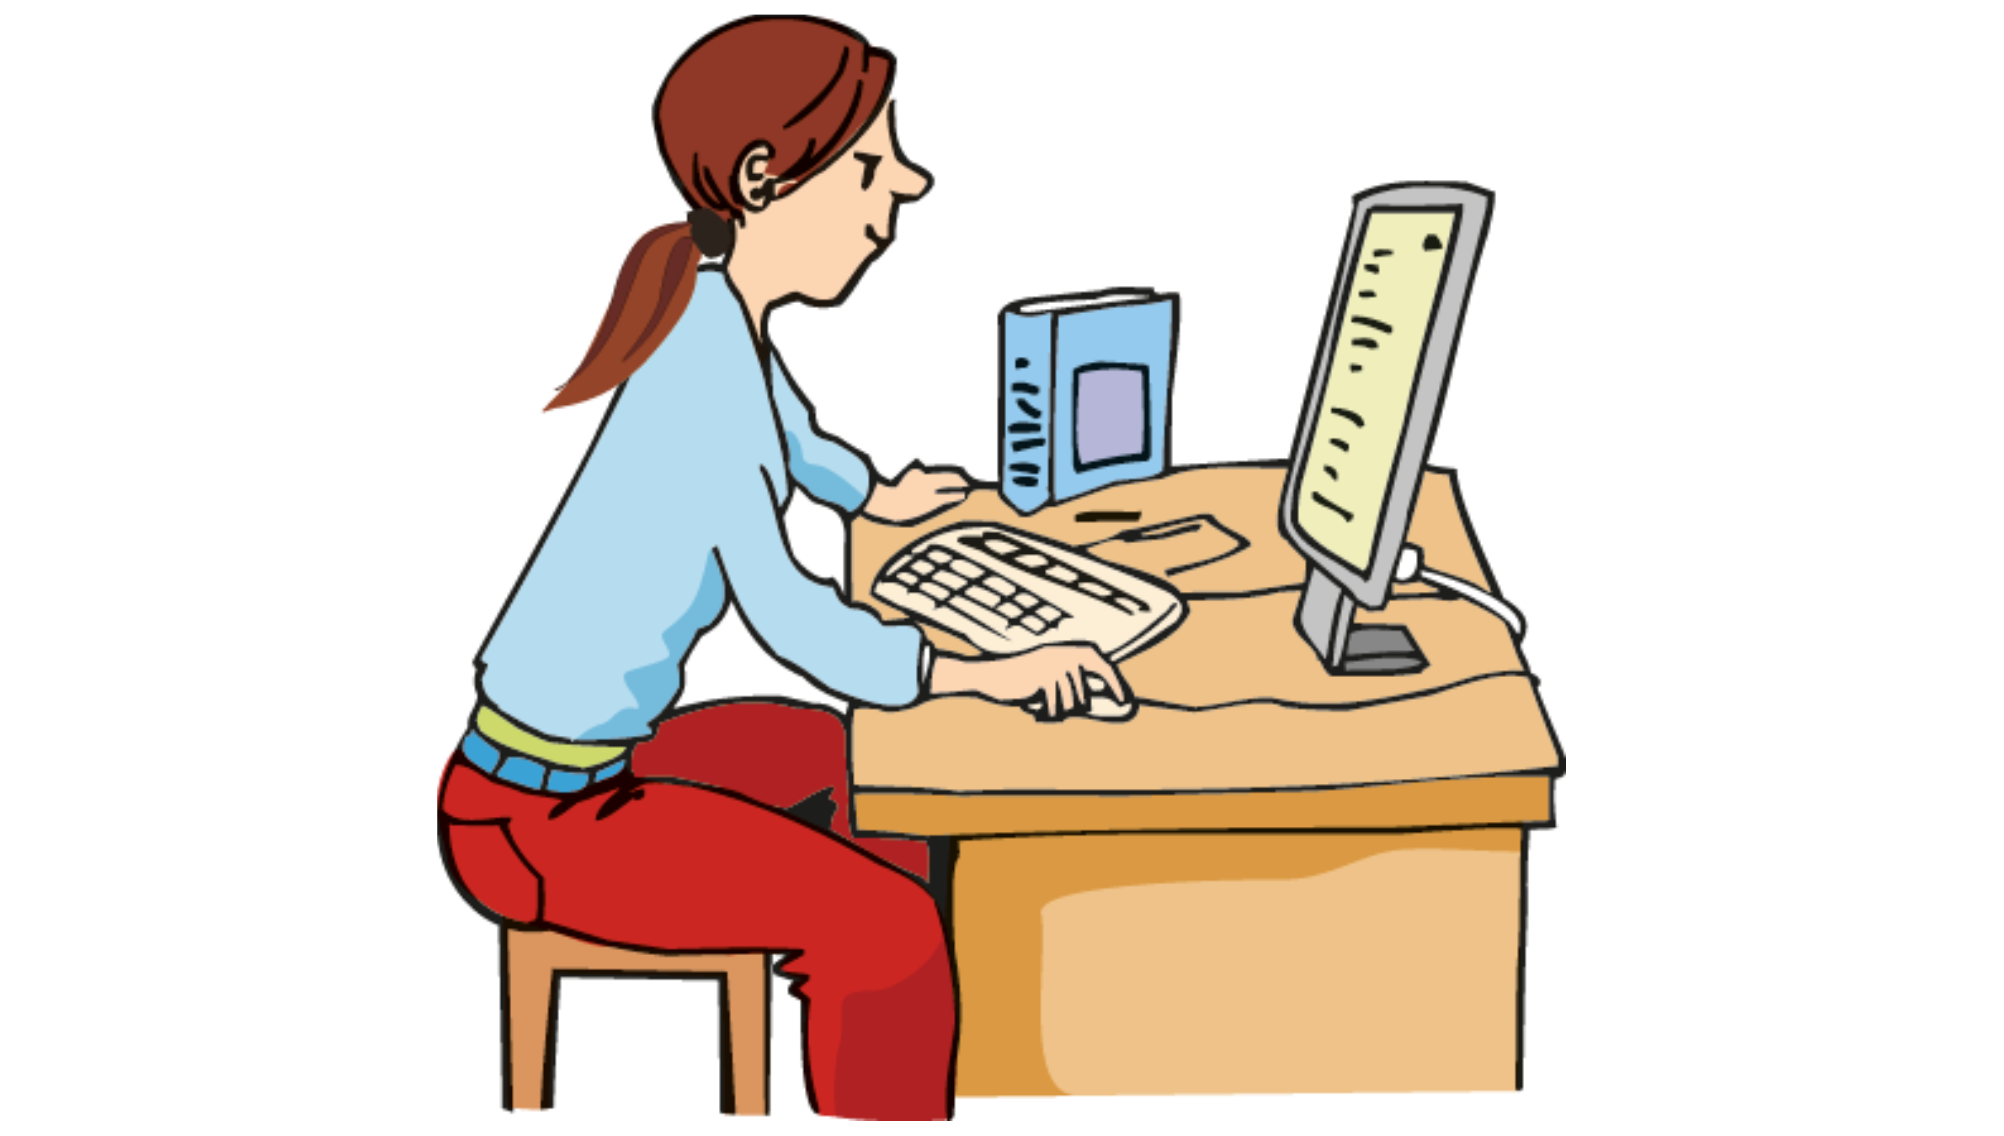 Grafik: Eine Frau sitzt auf einem Hocker an einem Schreibtisch und arbeitet an einem Computer.